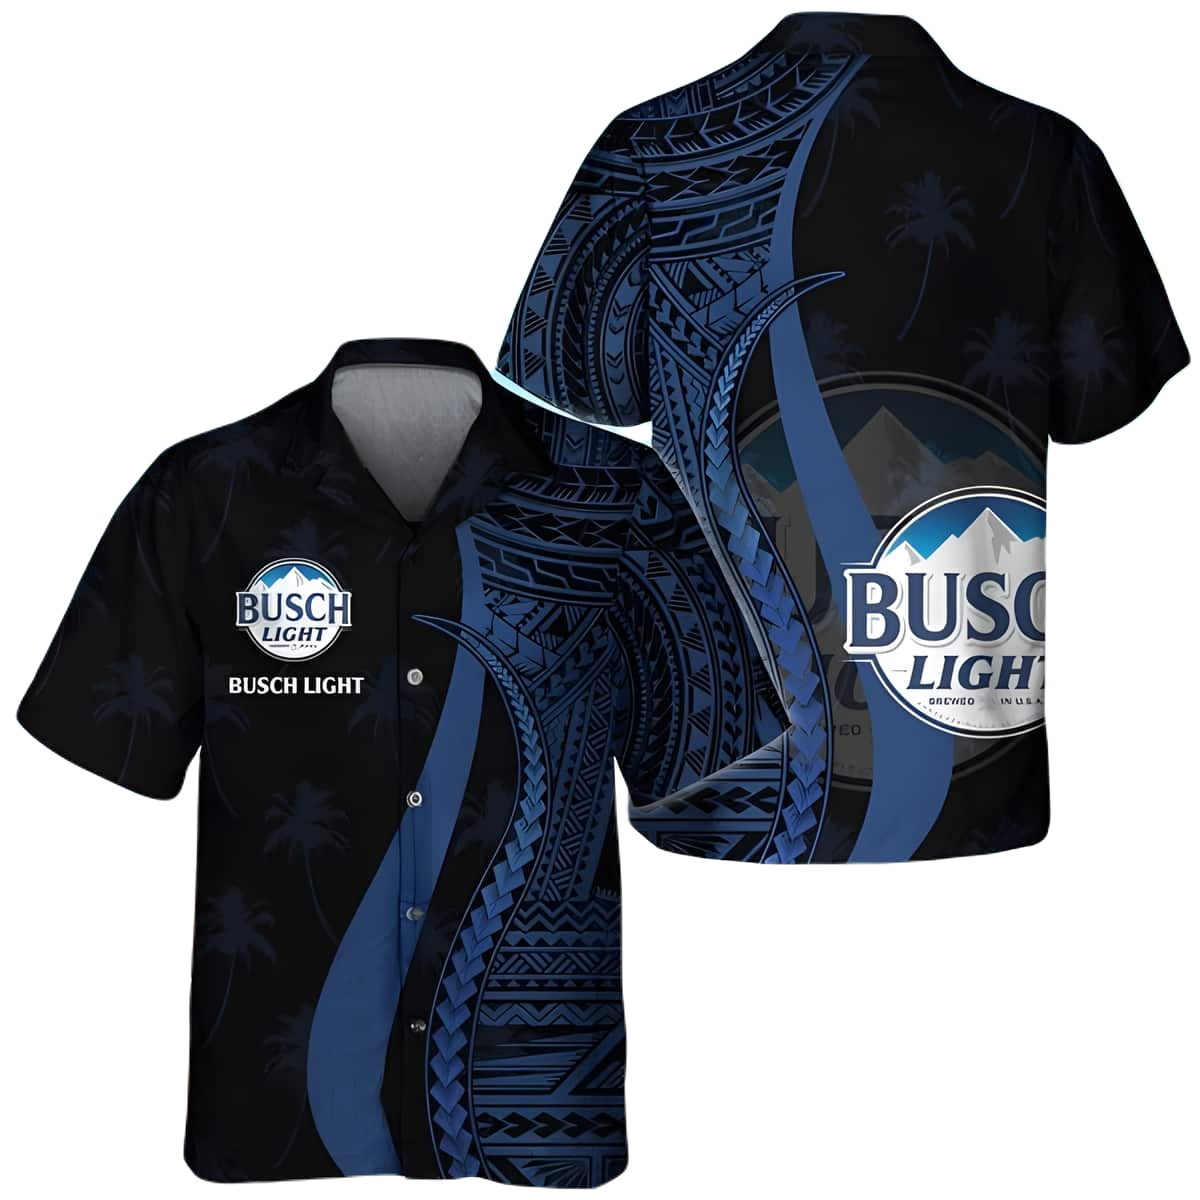 Busch Light Hawaii Shirt Blue Polynesian Pattern Busch Light Aloha Shirt Black Blue Unisex Adults New Release